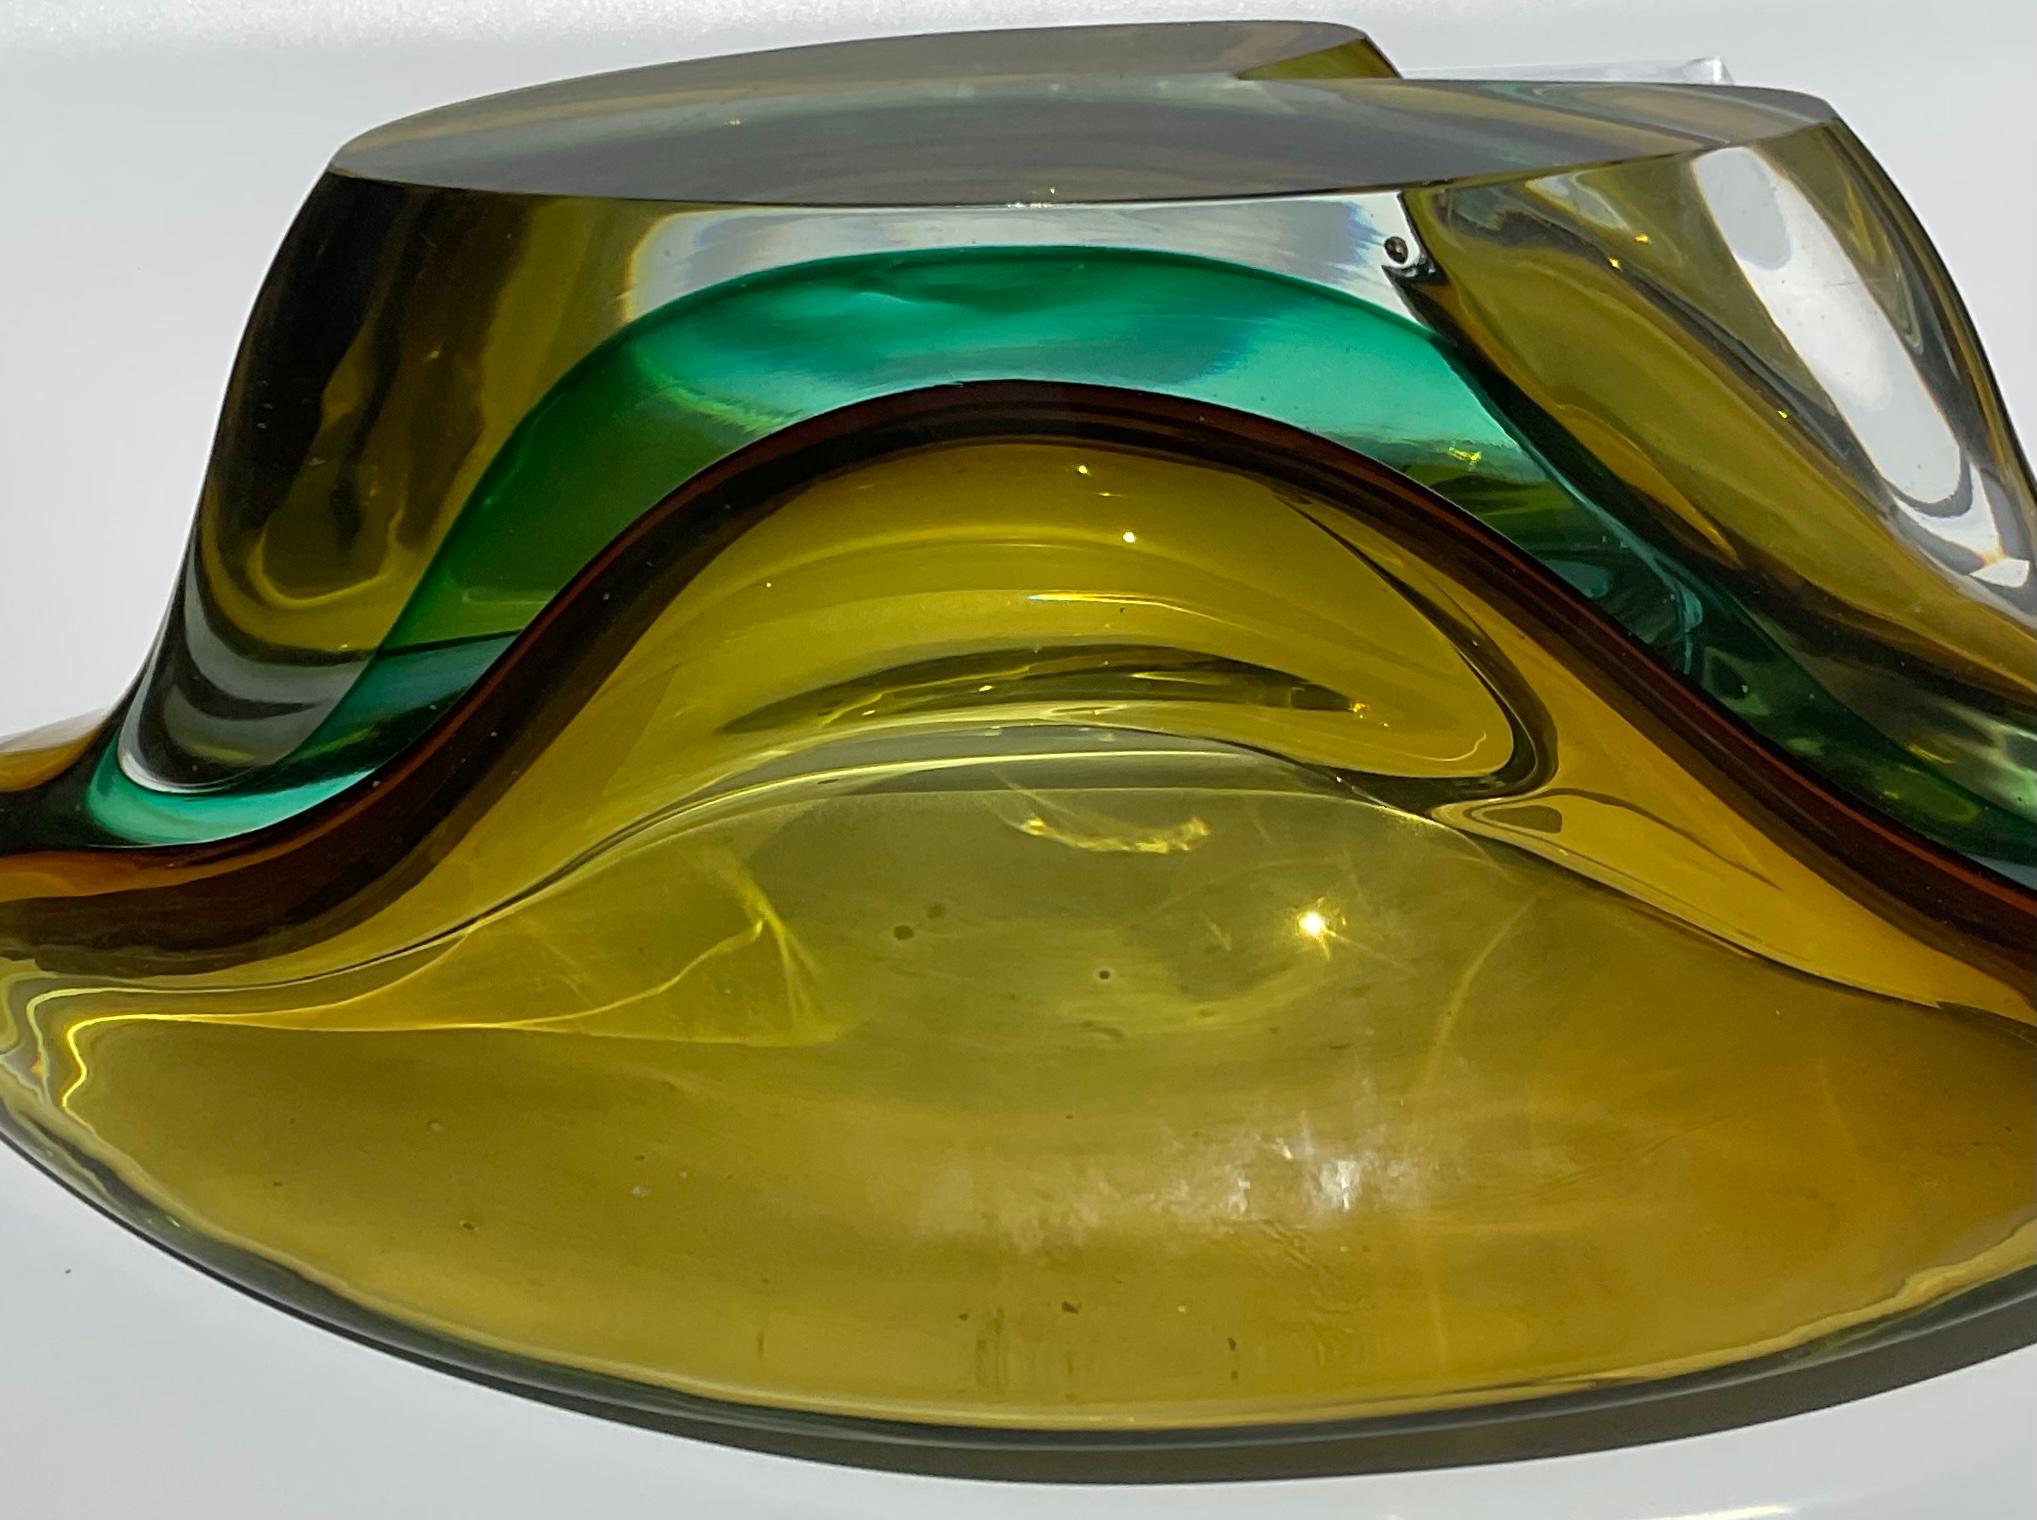 Large Murano Art glass Sommerso bowl attributed to Flavio Poli for Seguso Vetri D’Arte circa 1950s.